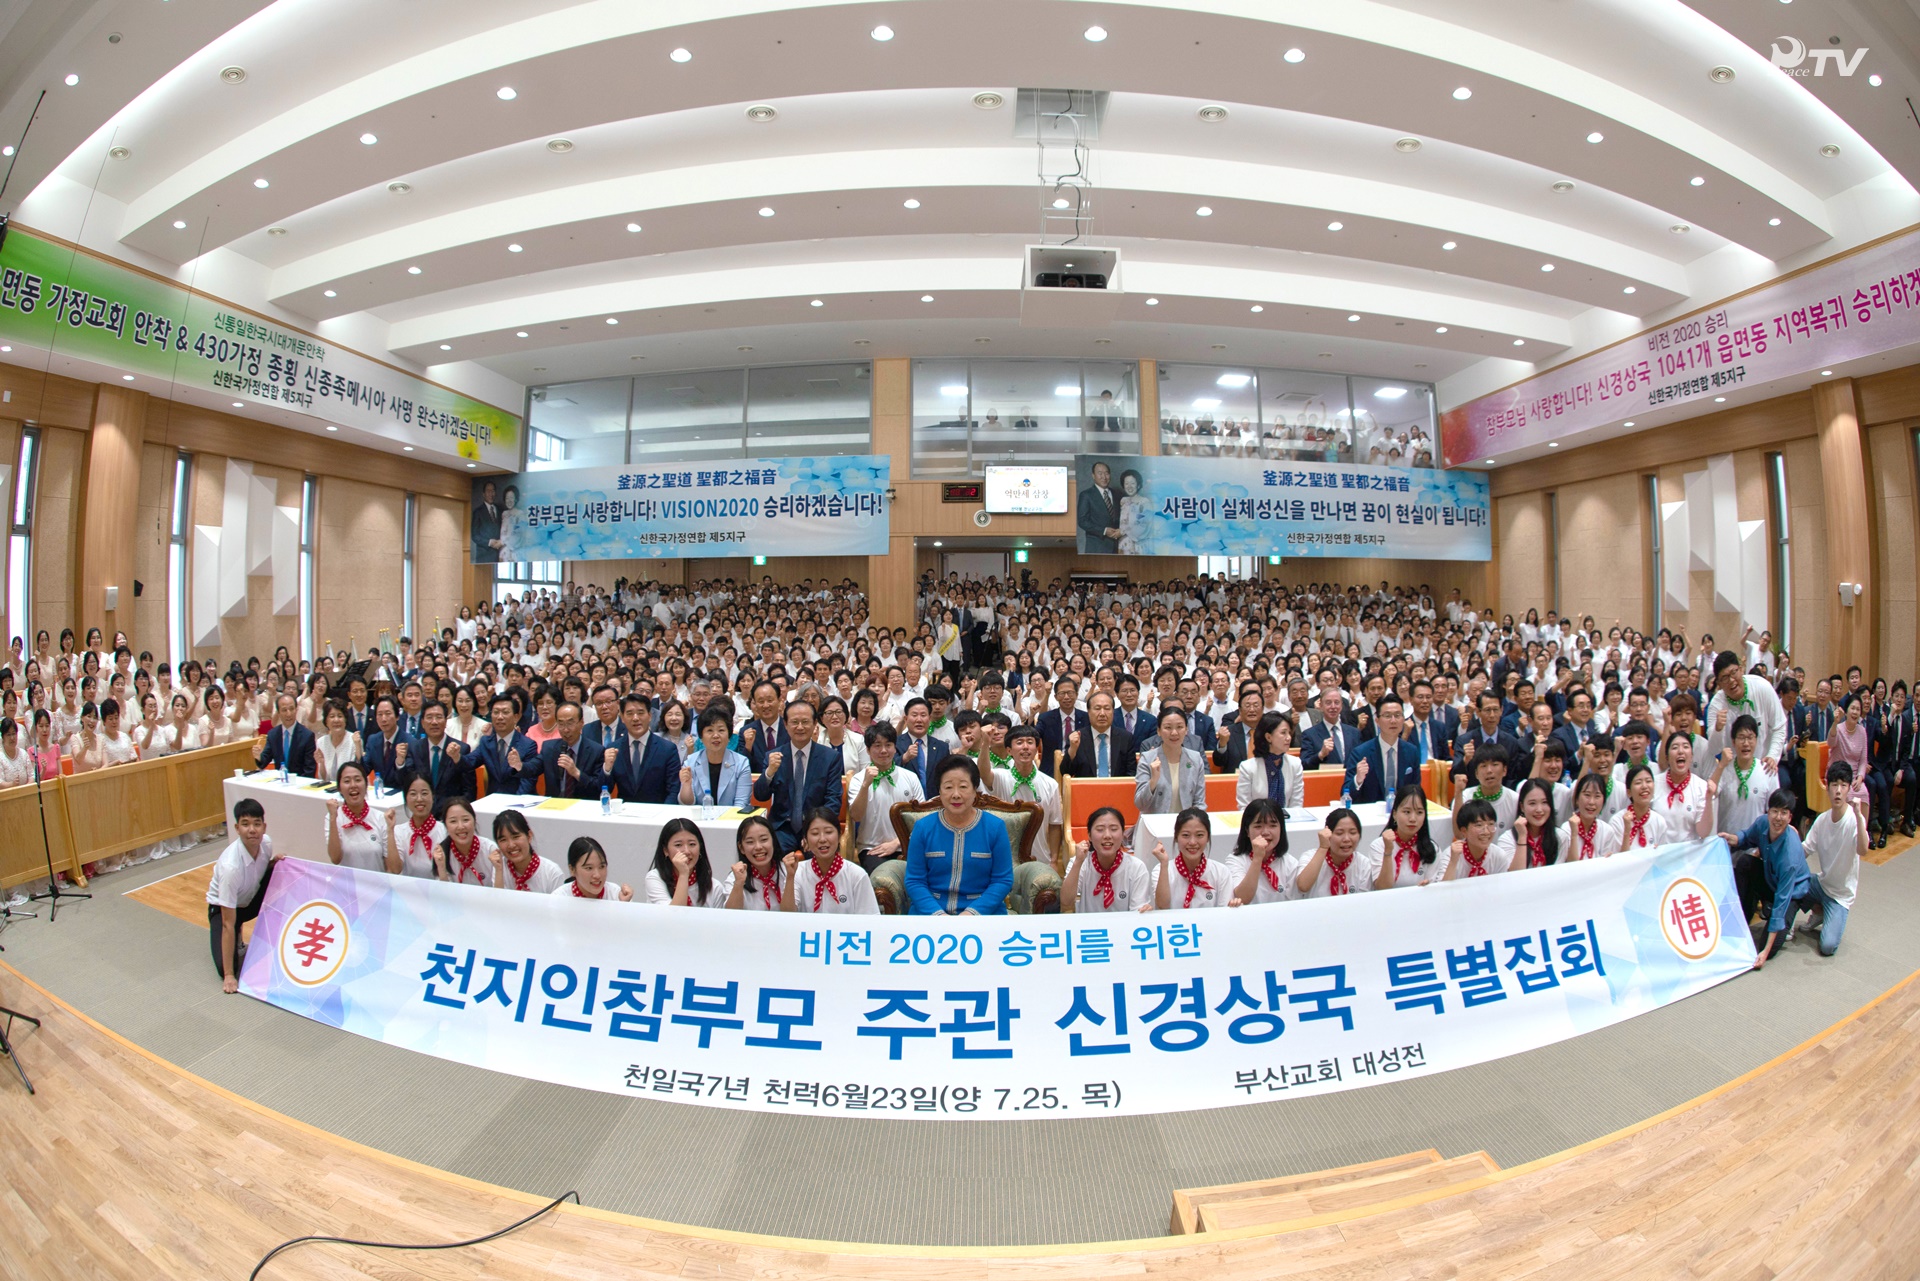 天地人真の父母様主管 神慶尚国 特別集会 (2019.7.25) 釜山教会